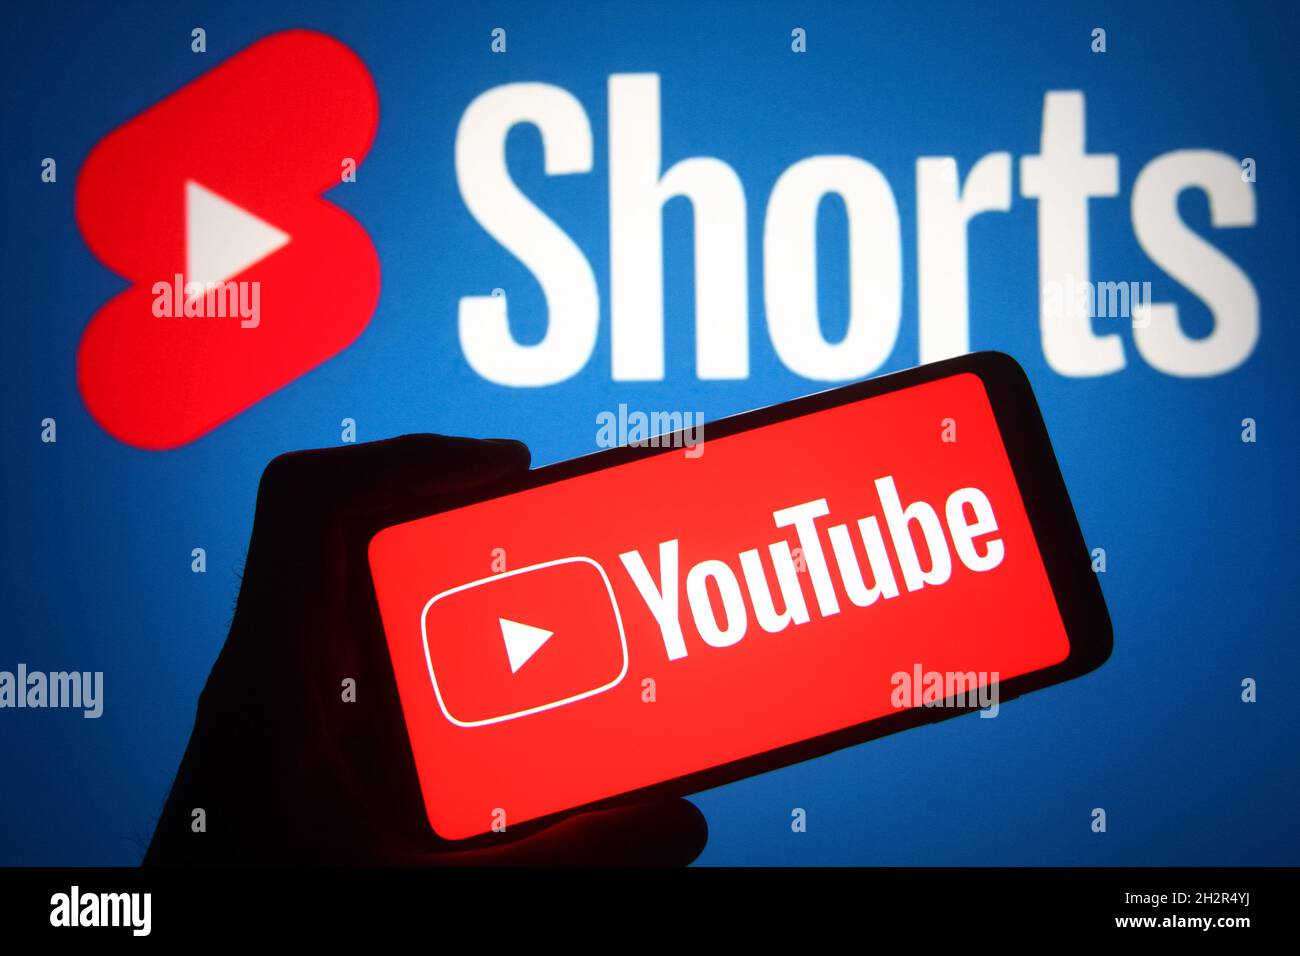 Logo Youtube: Chào mừng đến với thế giới của Youtube! Logo Youtube đã trở thành biểu tượng của nền tảng mạng xã hội video lớn nhất thế giới và nó đại diện cho những giá trị to lớn về chia sẻ, tương tác, và giới thiệu lẫn nhau. Nếu bạn muốn khám phá thế giới của Youtube, hãy xem ngay hình ảnh liên quan đến từ khóa này!